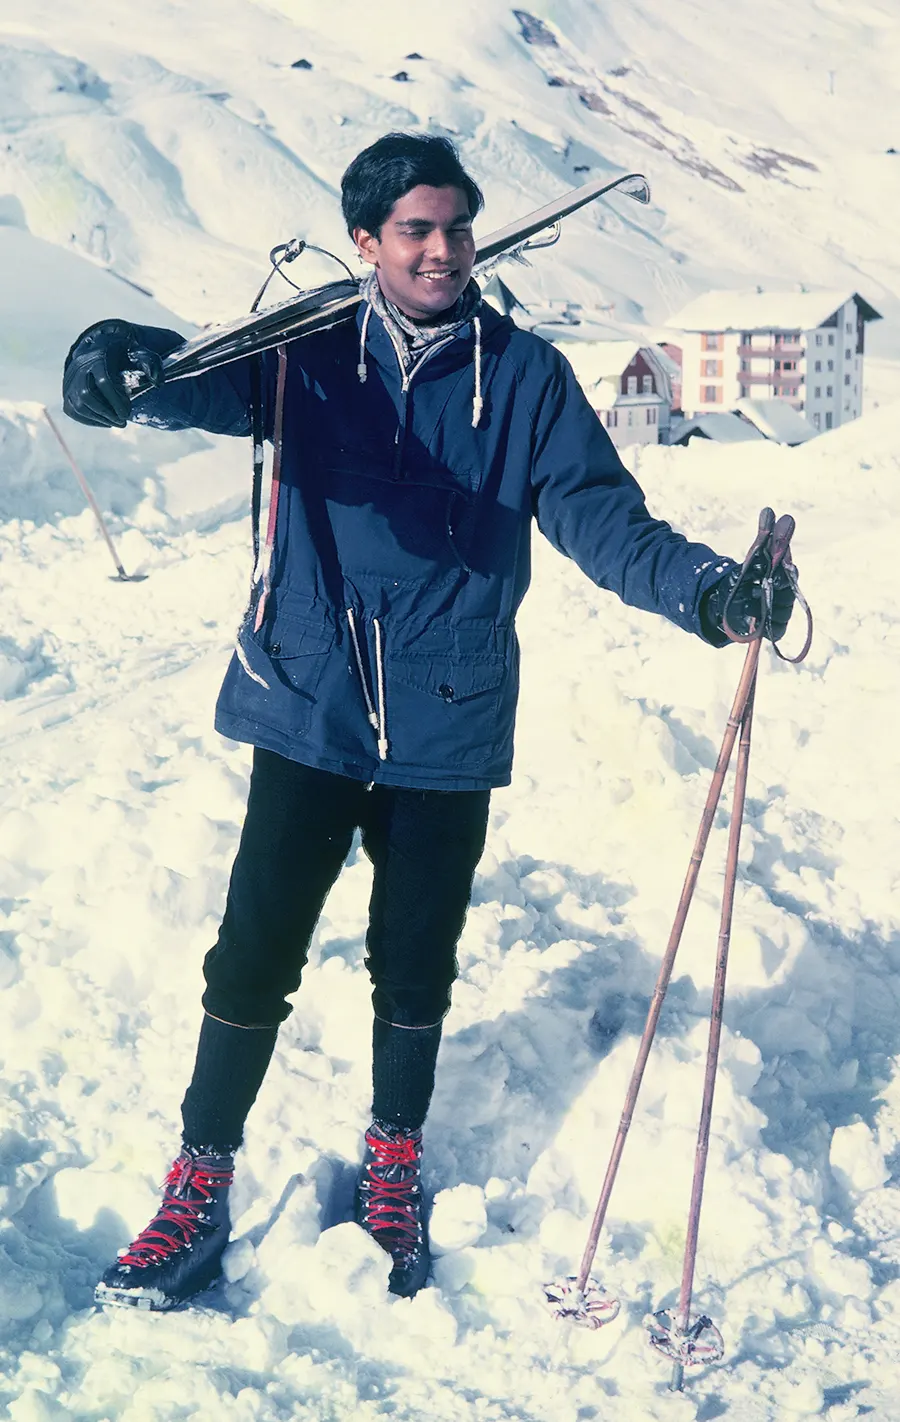 1965, Age 20. Cambridge Years - Swiss ski trip